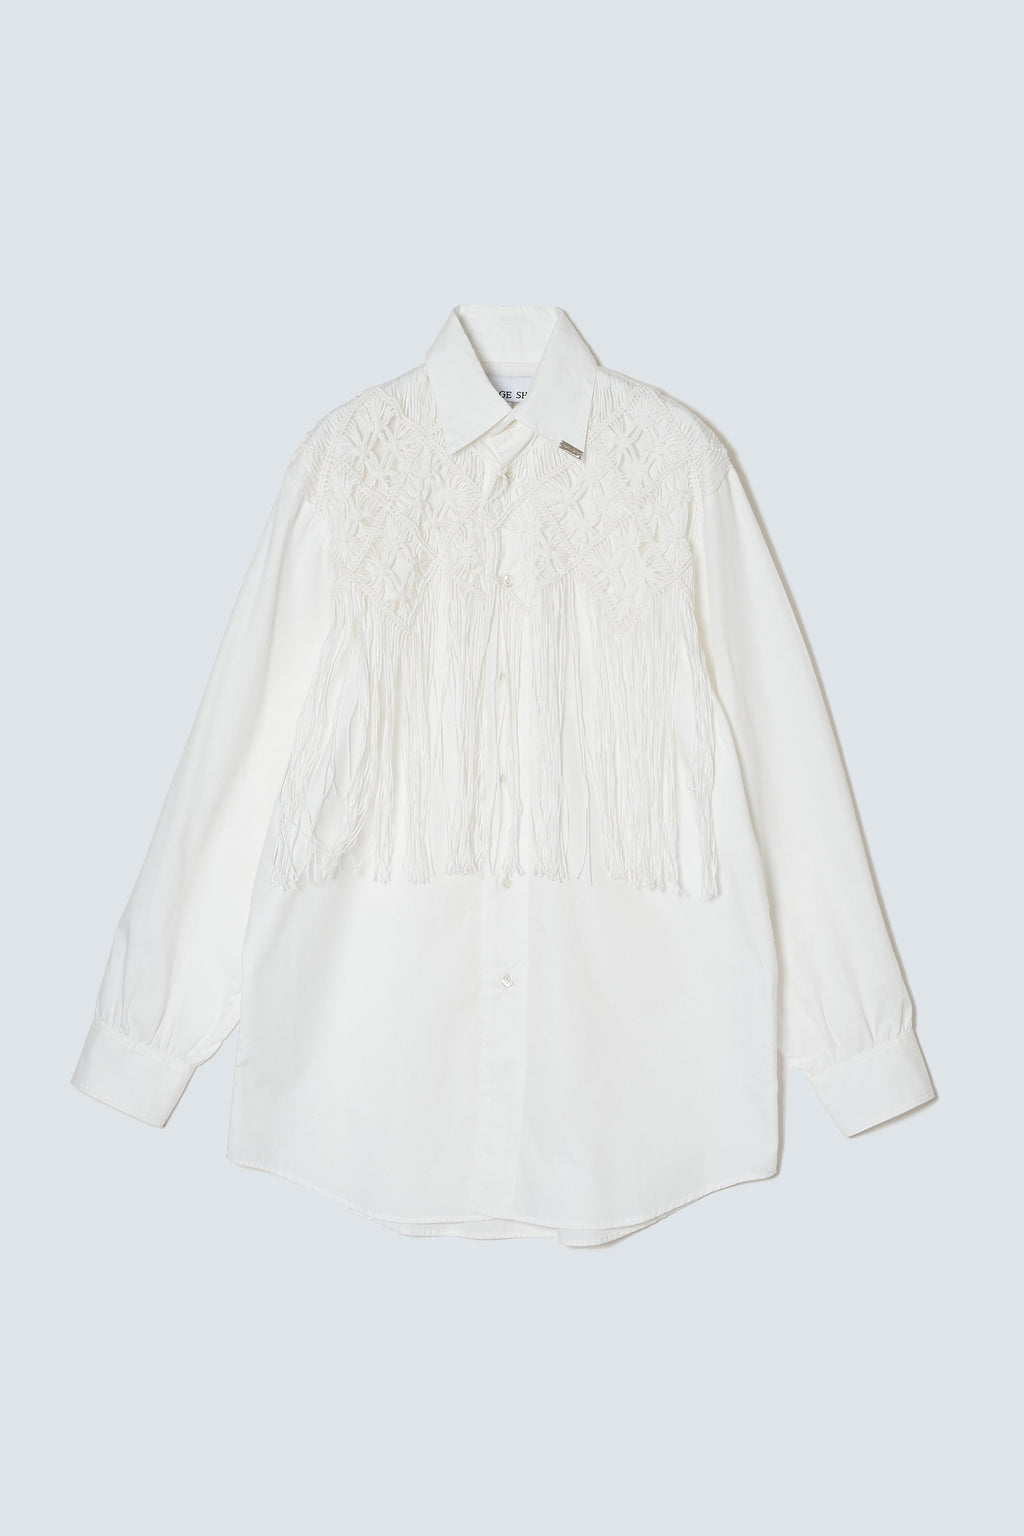 【予約商品】Macrame Fringe Cotton Shirt